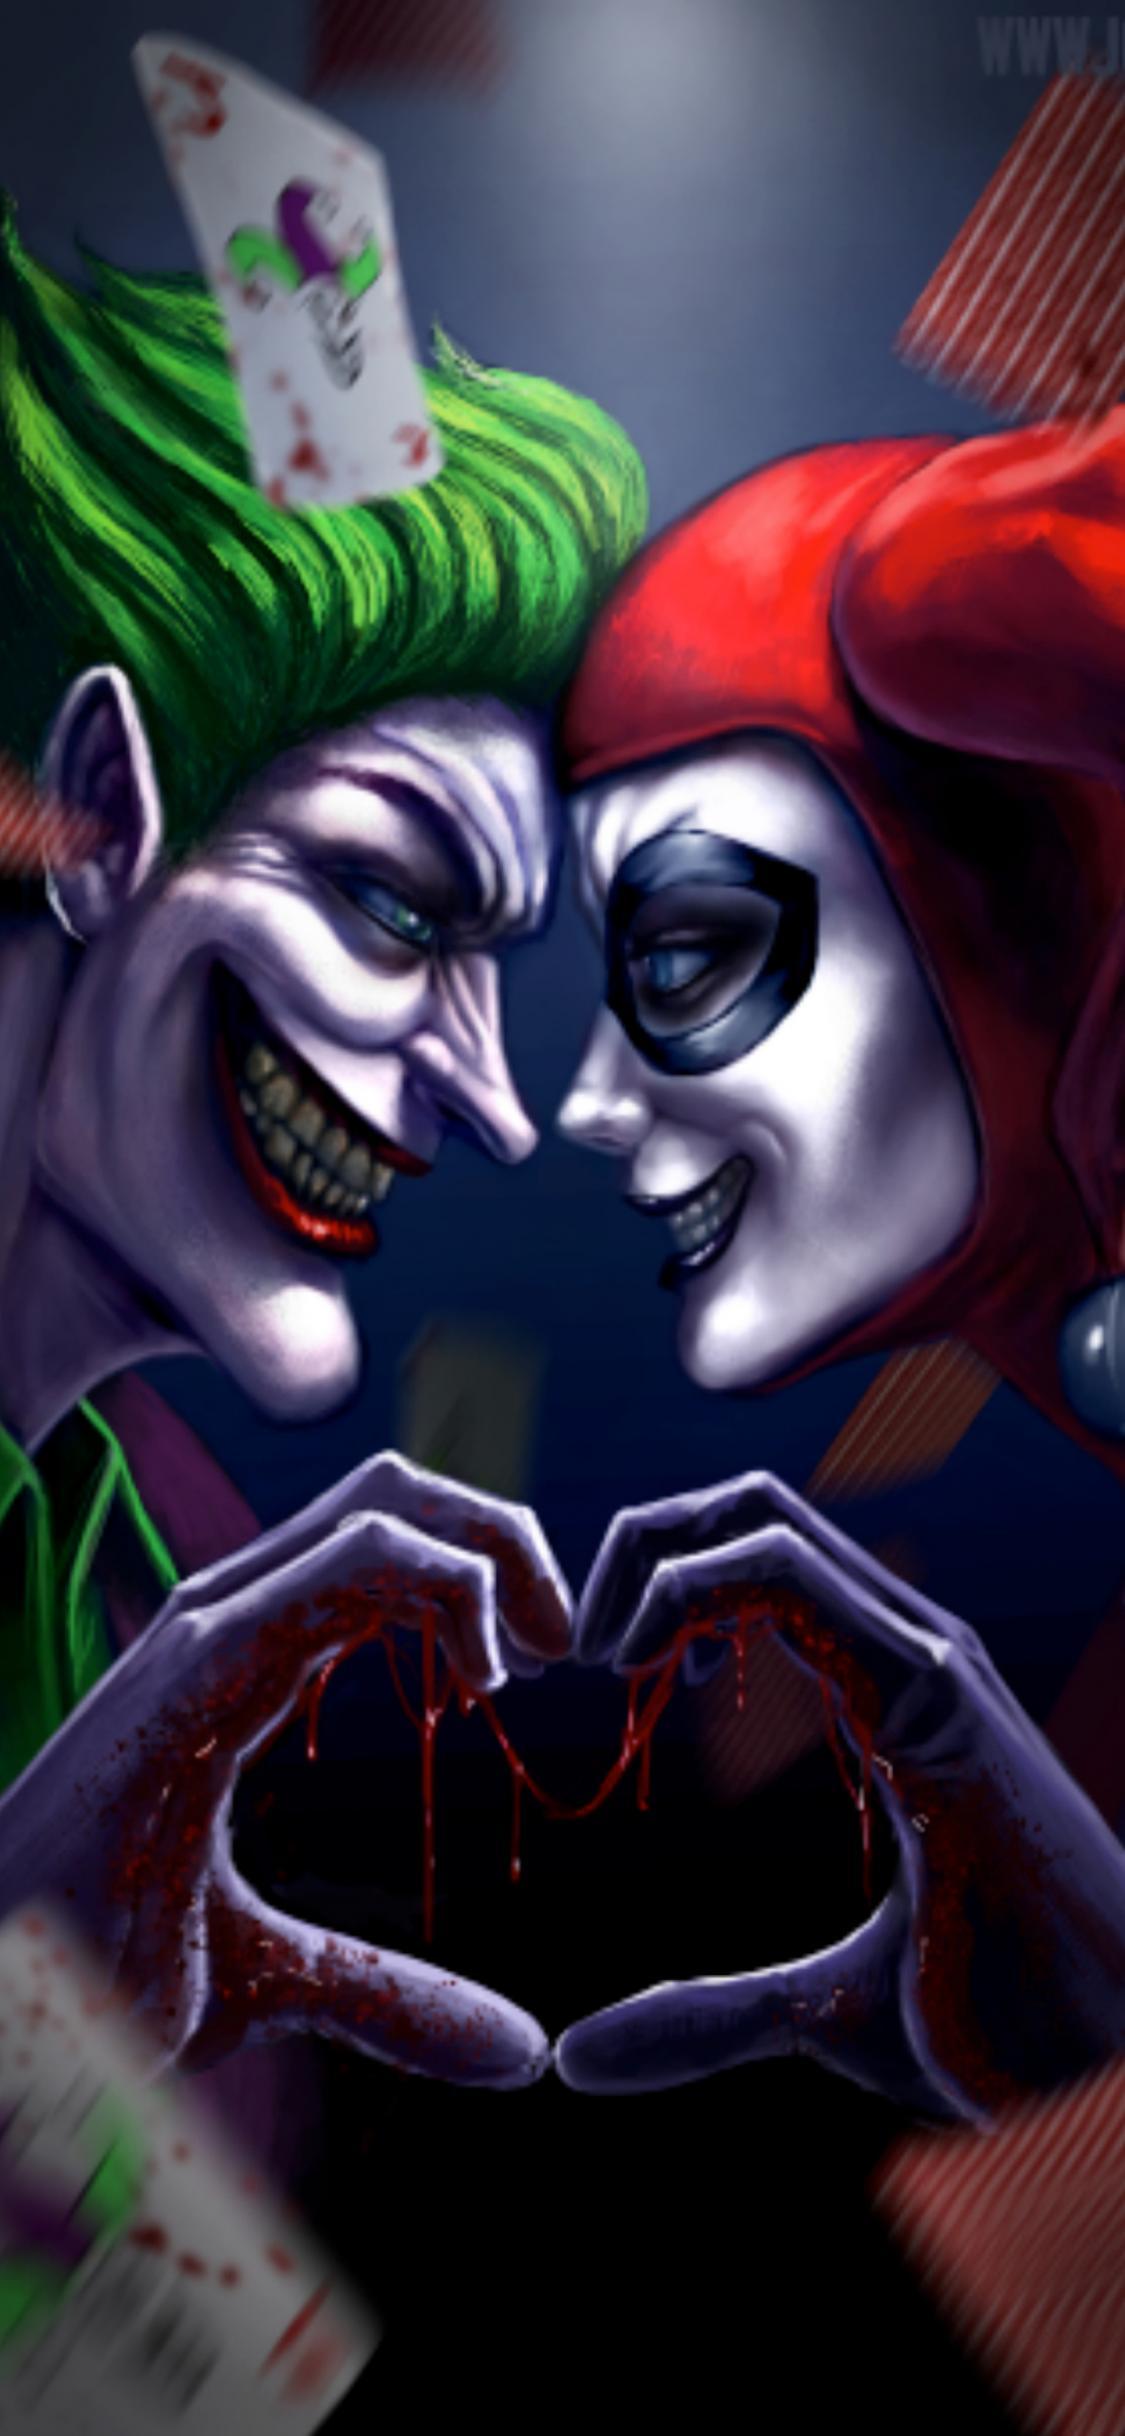 Download Joker And Harlequinn Wallpaper free for mobile